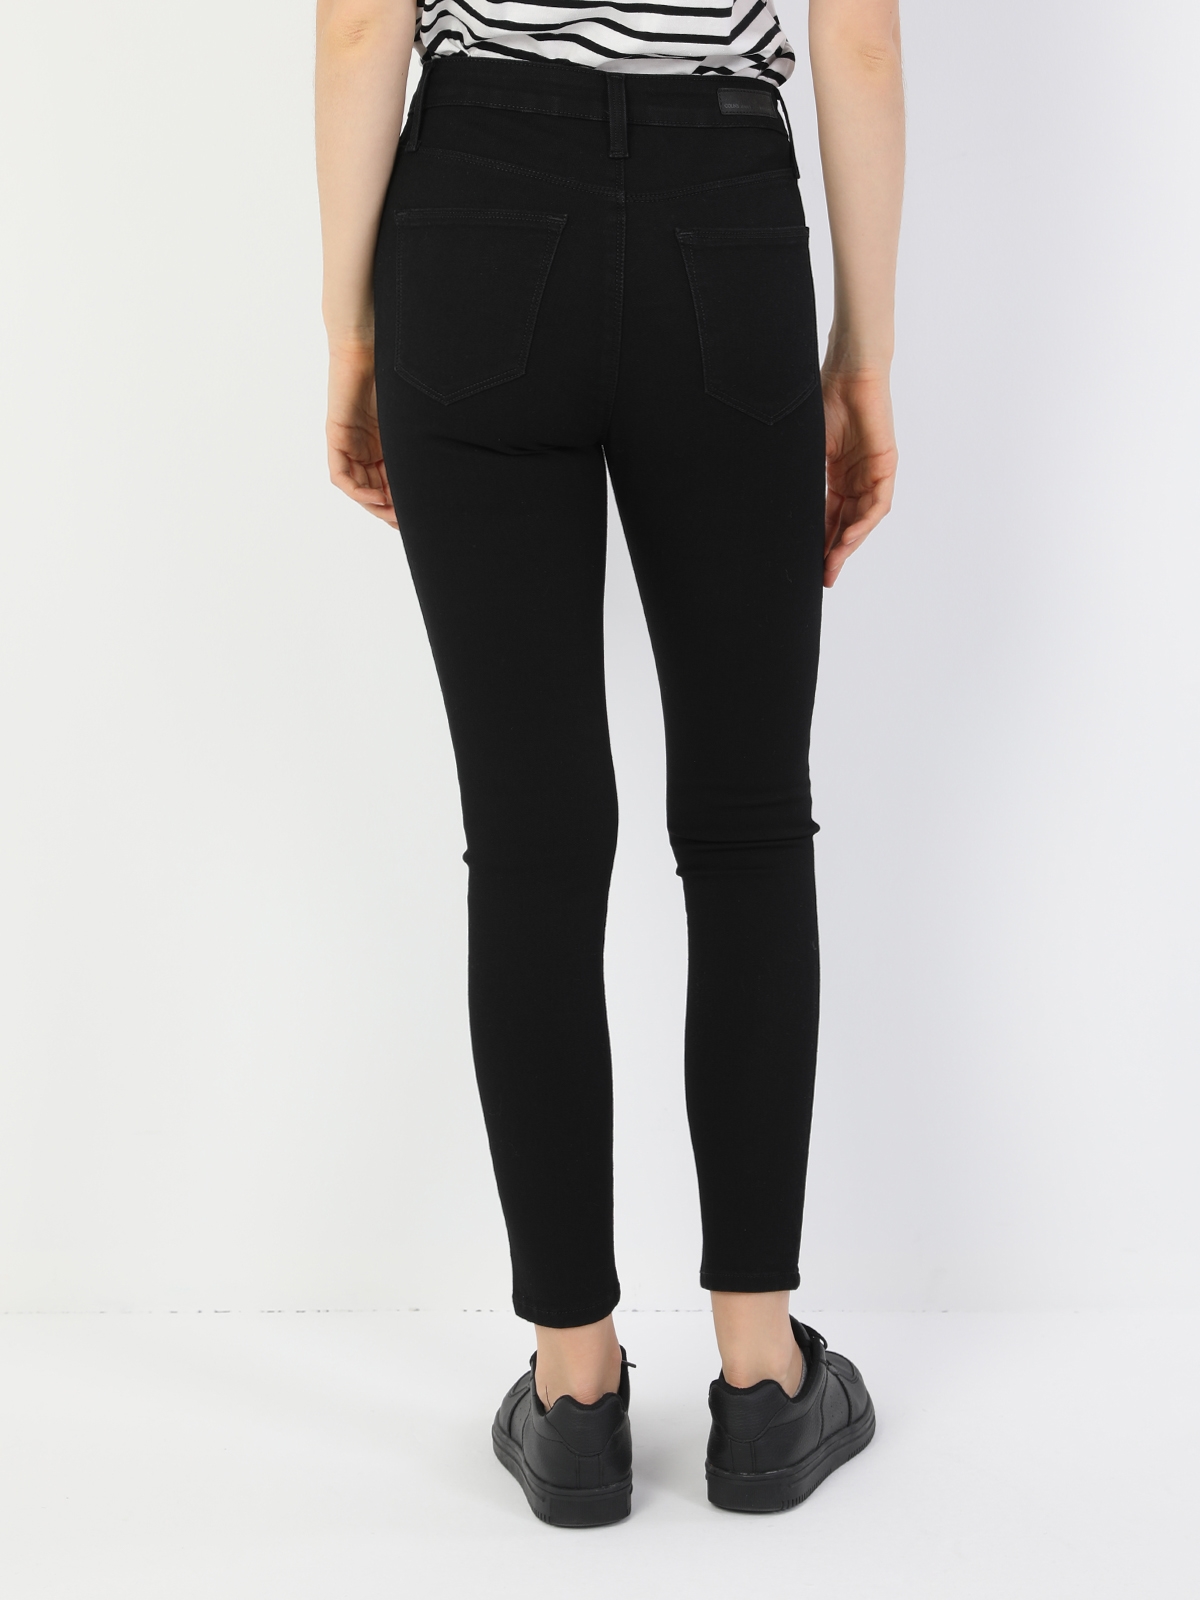 Afficher les détails de Pantalon En Jean Noir Taille Haute À Jambe Étroite 760 Diana Pour Femme